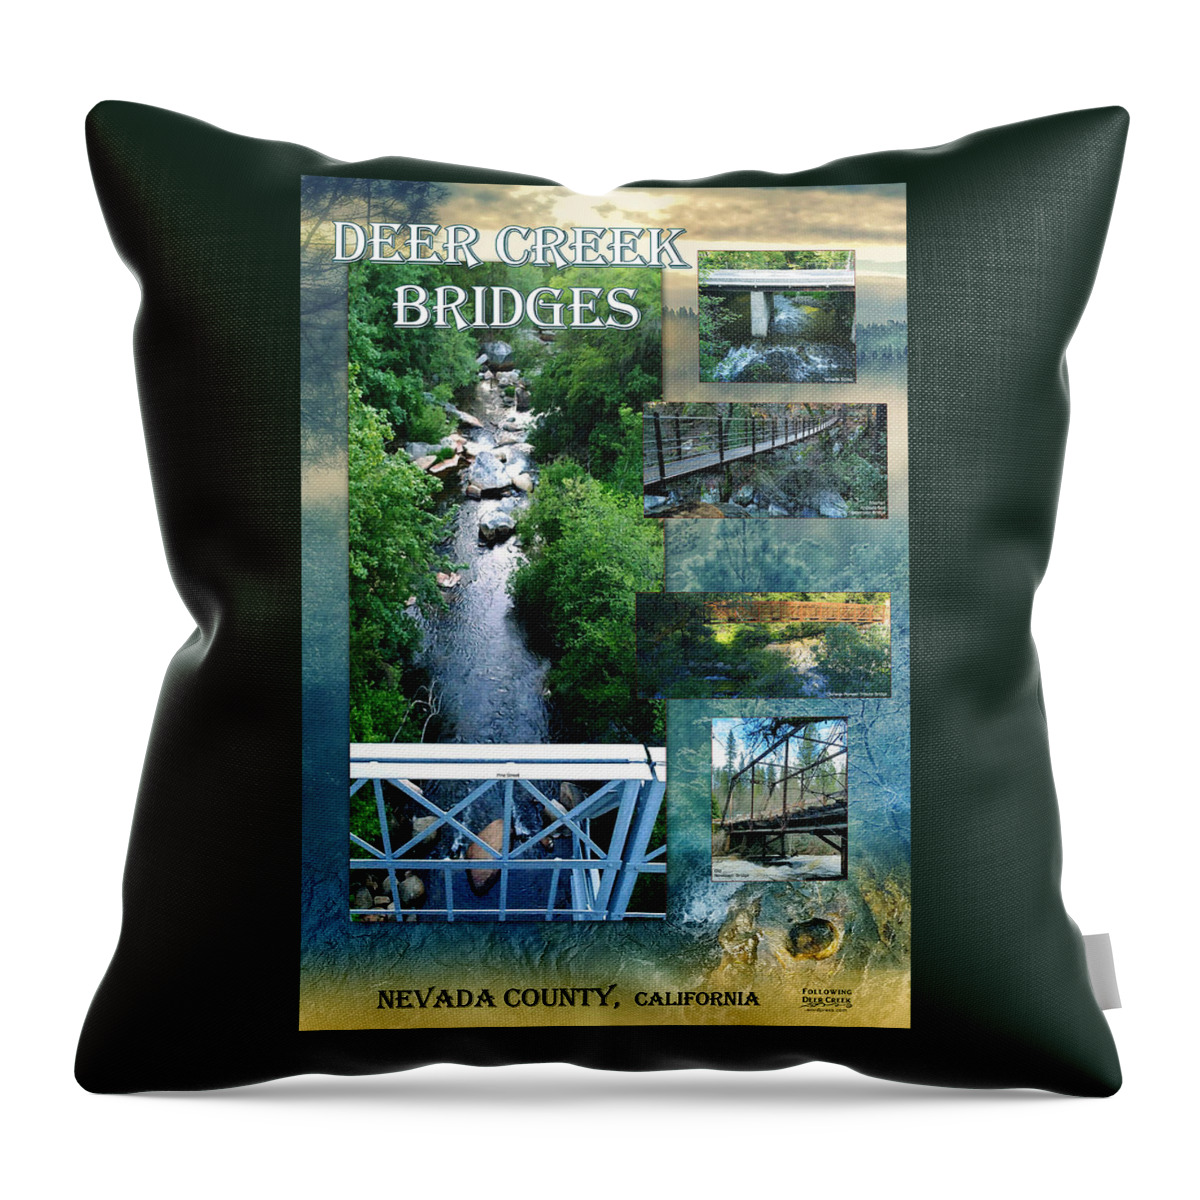 Deer Creek Bridges Throw Pillow featuring the digital art Deer Creek Bridges by Lisa Redfern